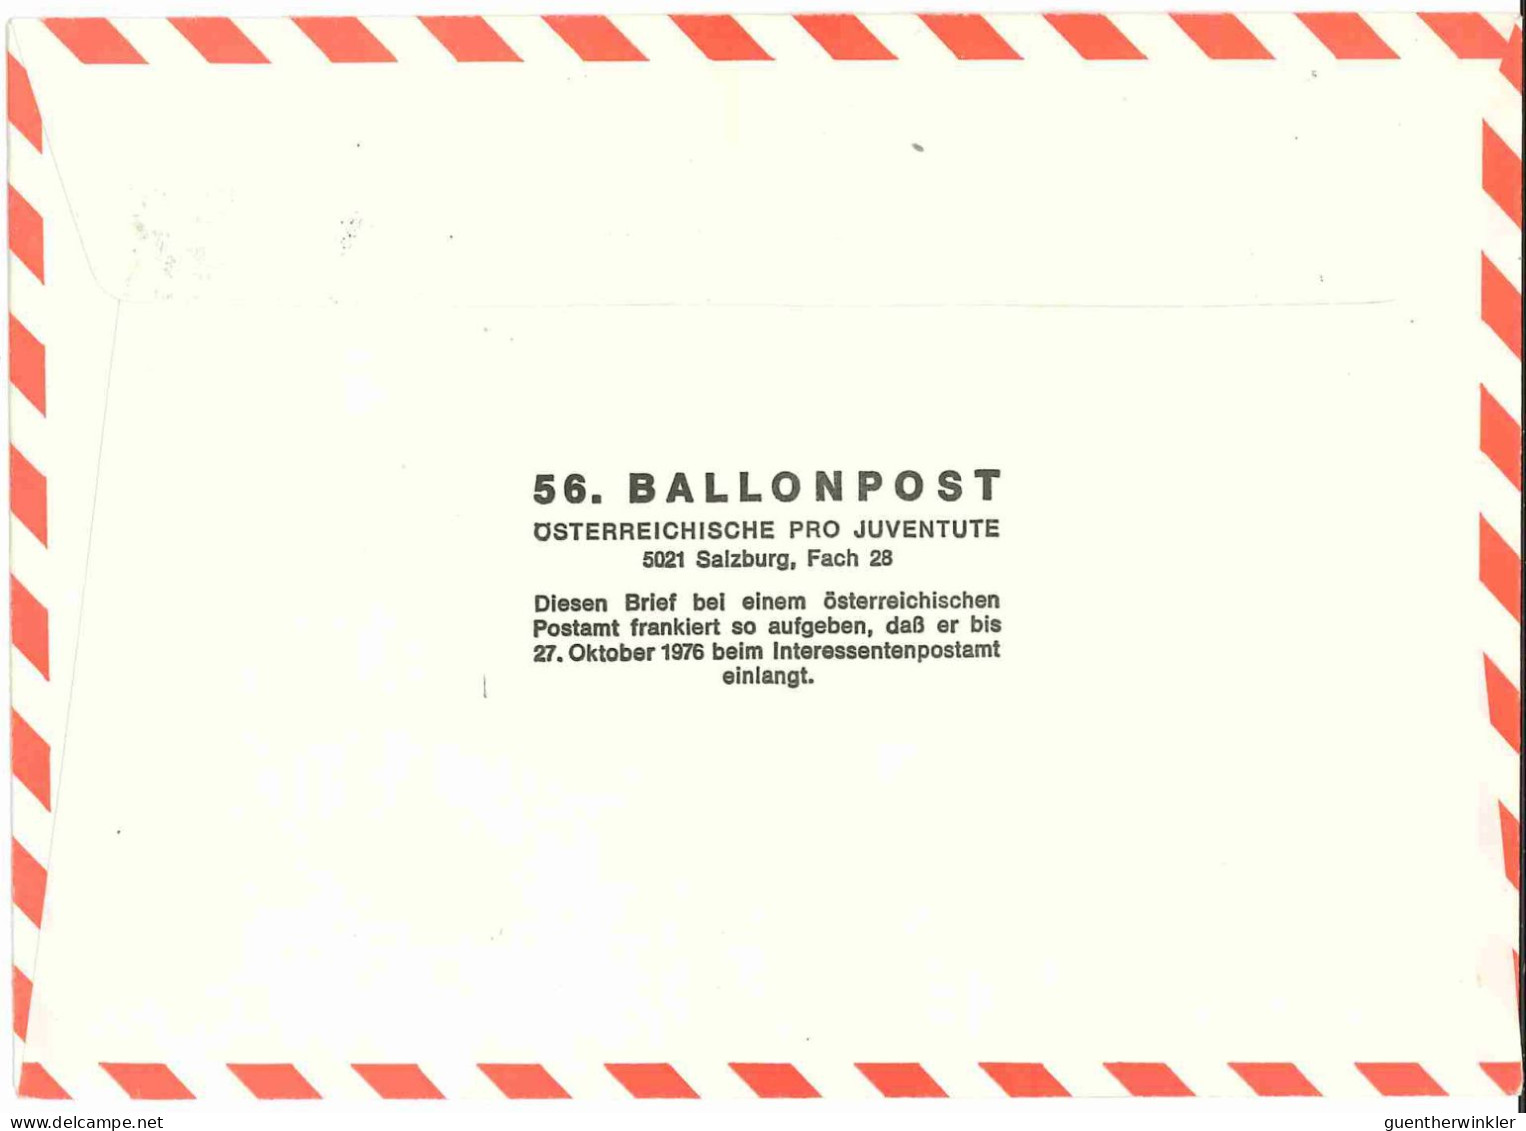 Regulärer Ballonpostflug Nr. 56a Der Pro Juventute [RBP56.] - Par Ballon